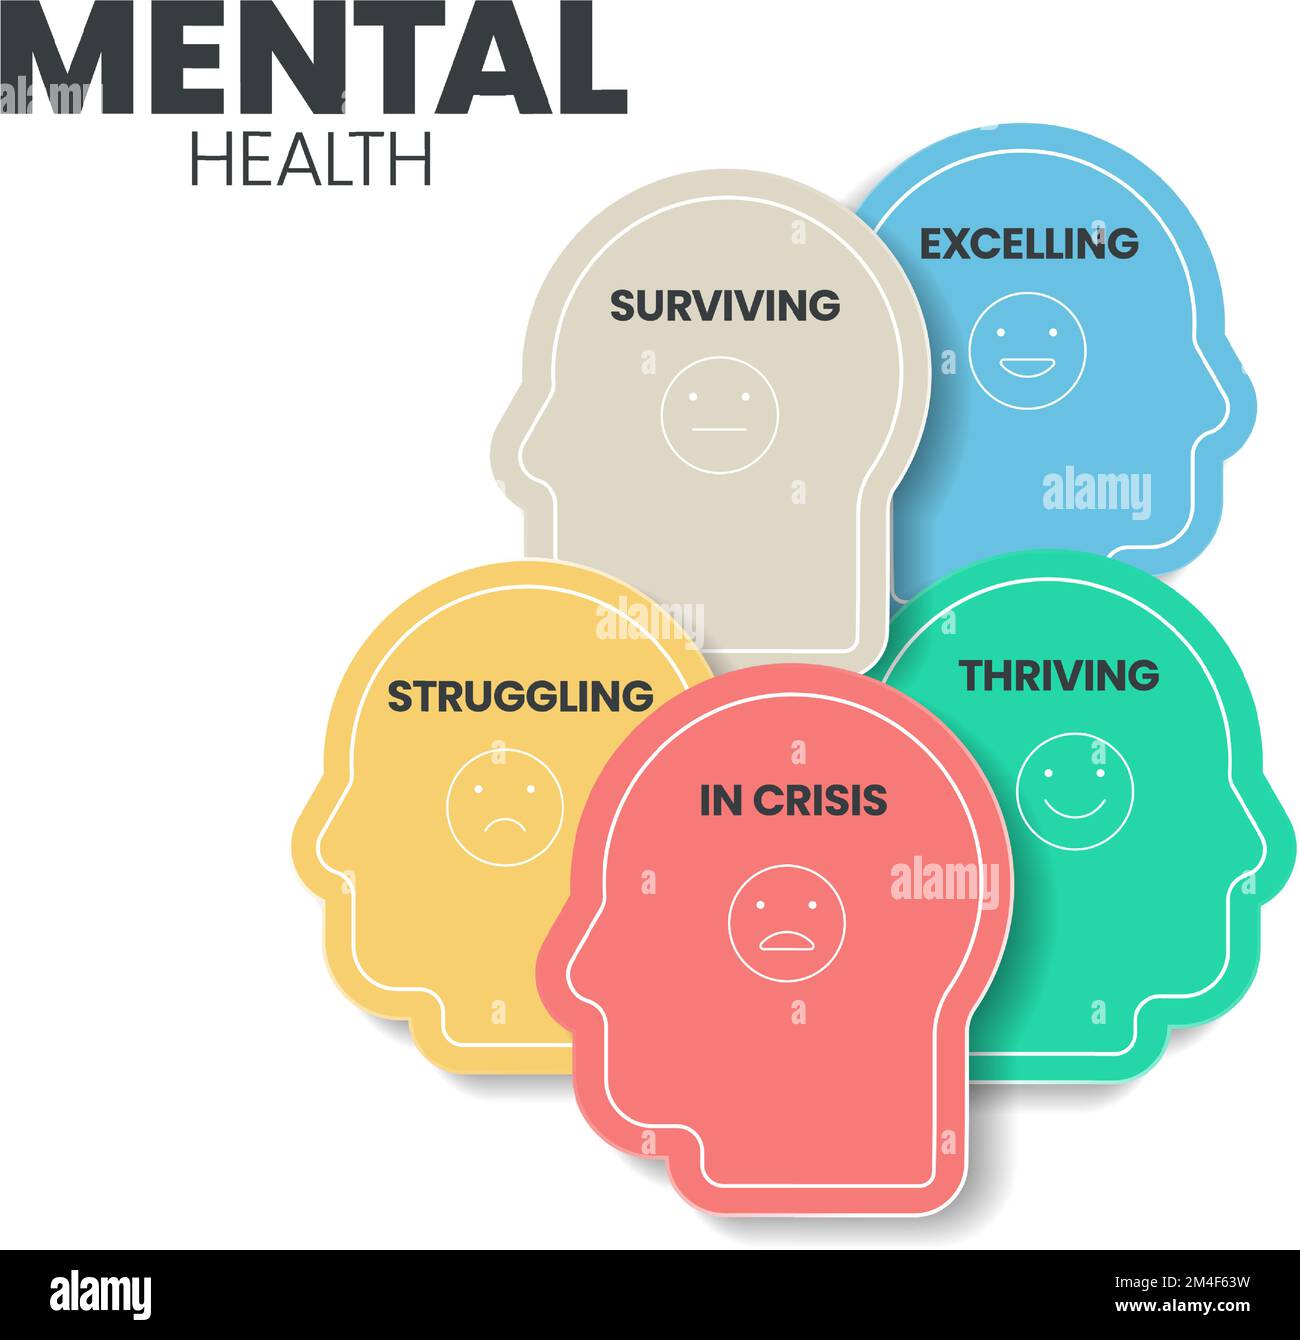 Modèle de présentation de l'infographie sur la santé mentale ou émotionnelle pour prévenir les troubles mentaux. La santé mentale a 5 niveaux à analyser comme en crise Illustration de Vecteur